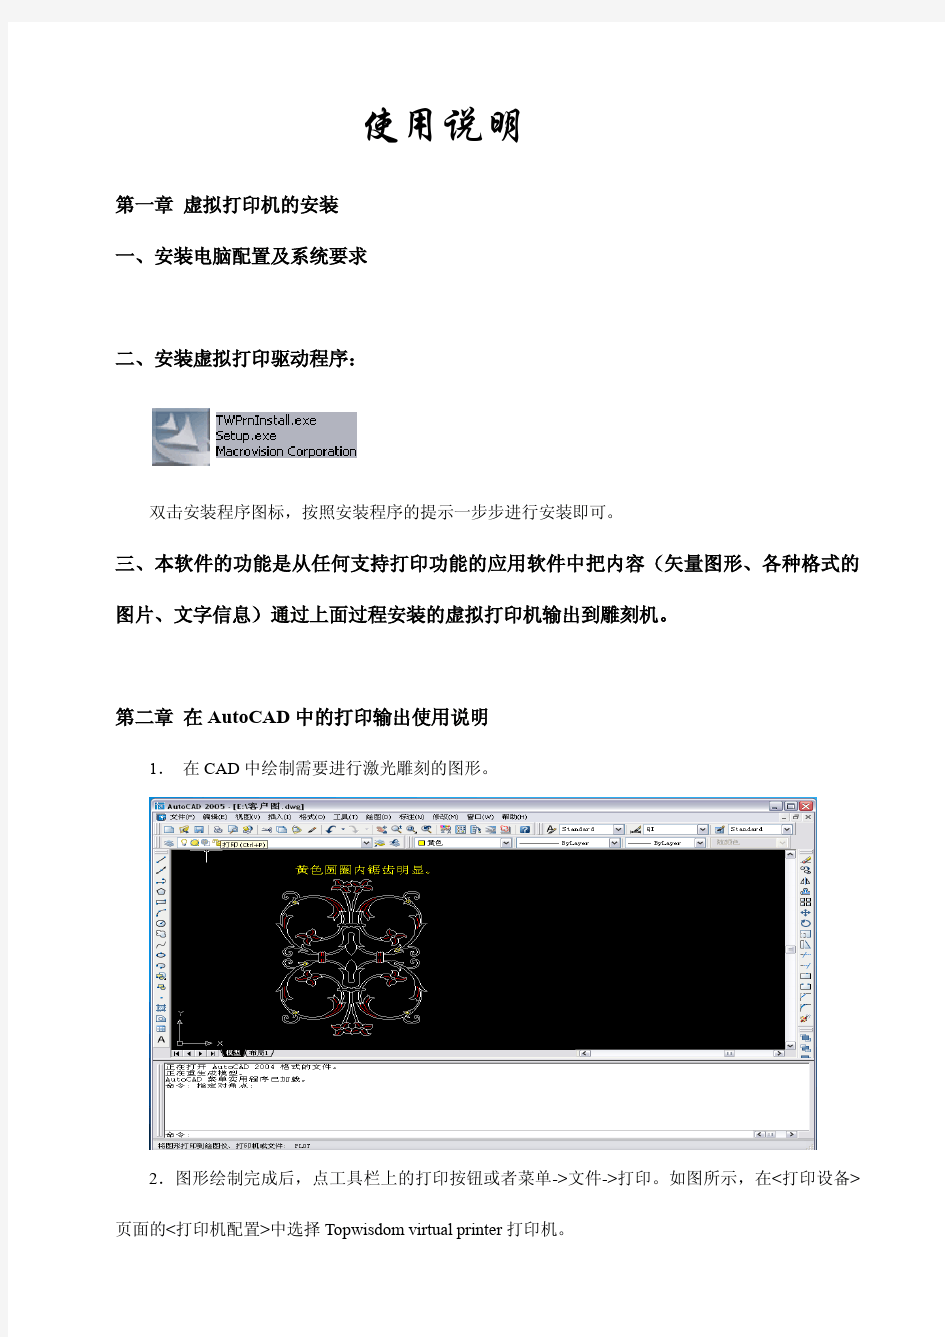 激光雕刻软件虚拟打印输出操作手册